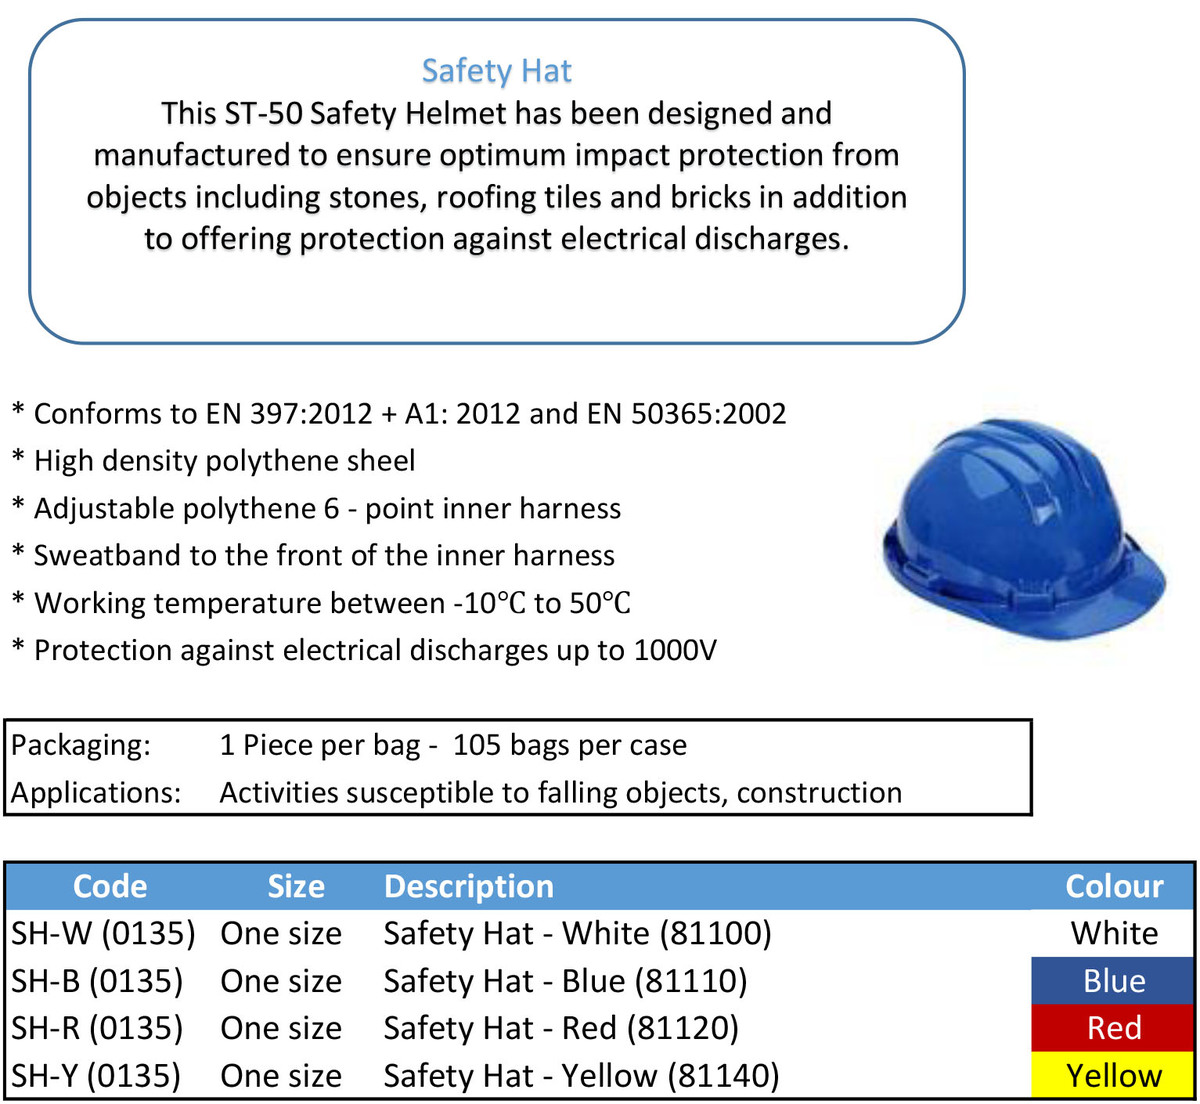 Safety-hat-info-final.jpg#asset:7355